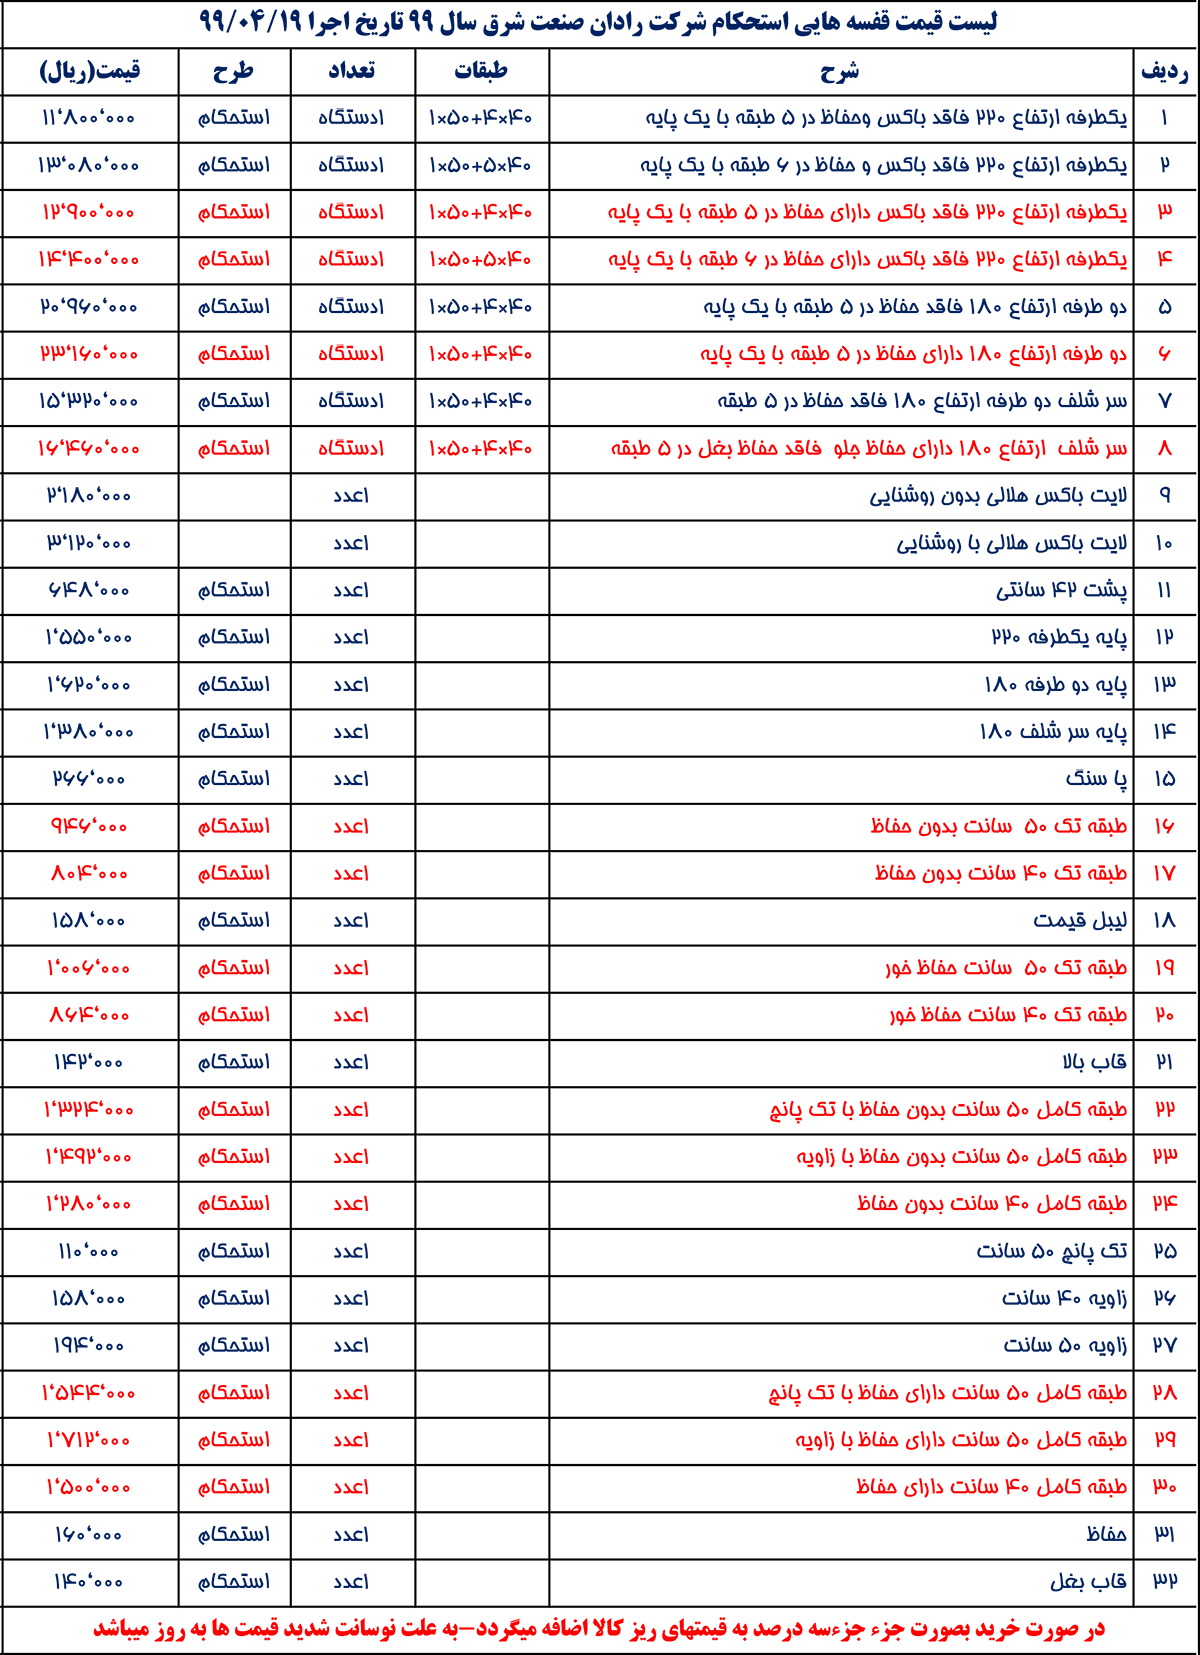 لیست قیمت قفسه های استحکام شرکت رادان صنعت شرق سال 99 تاریخ اجرا 1399/04/19